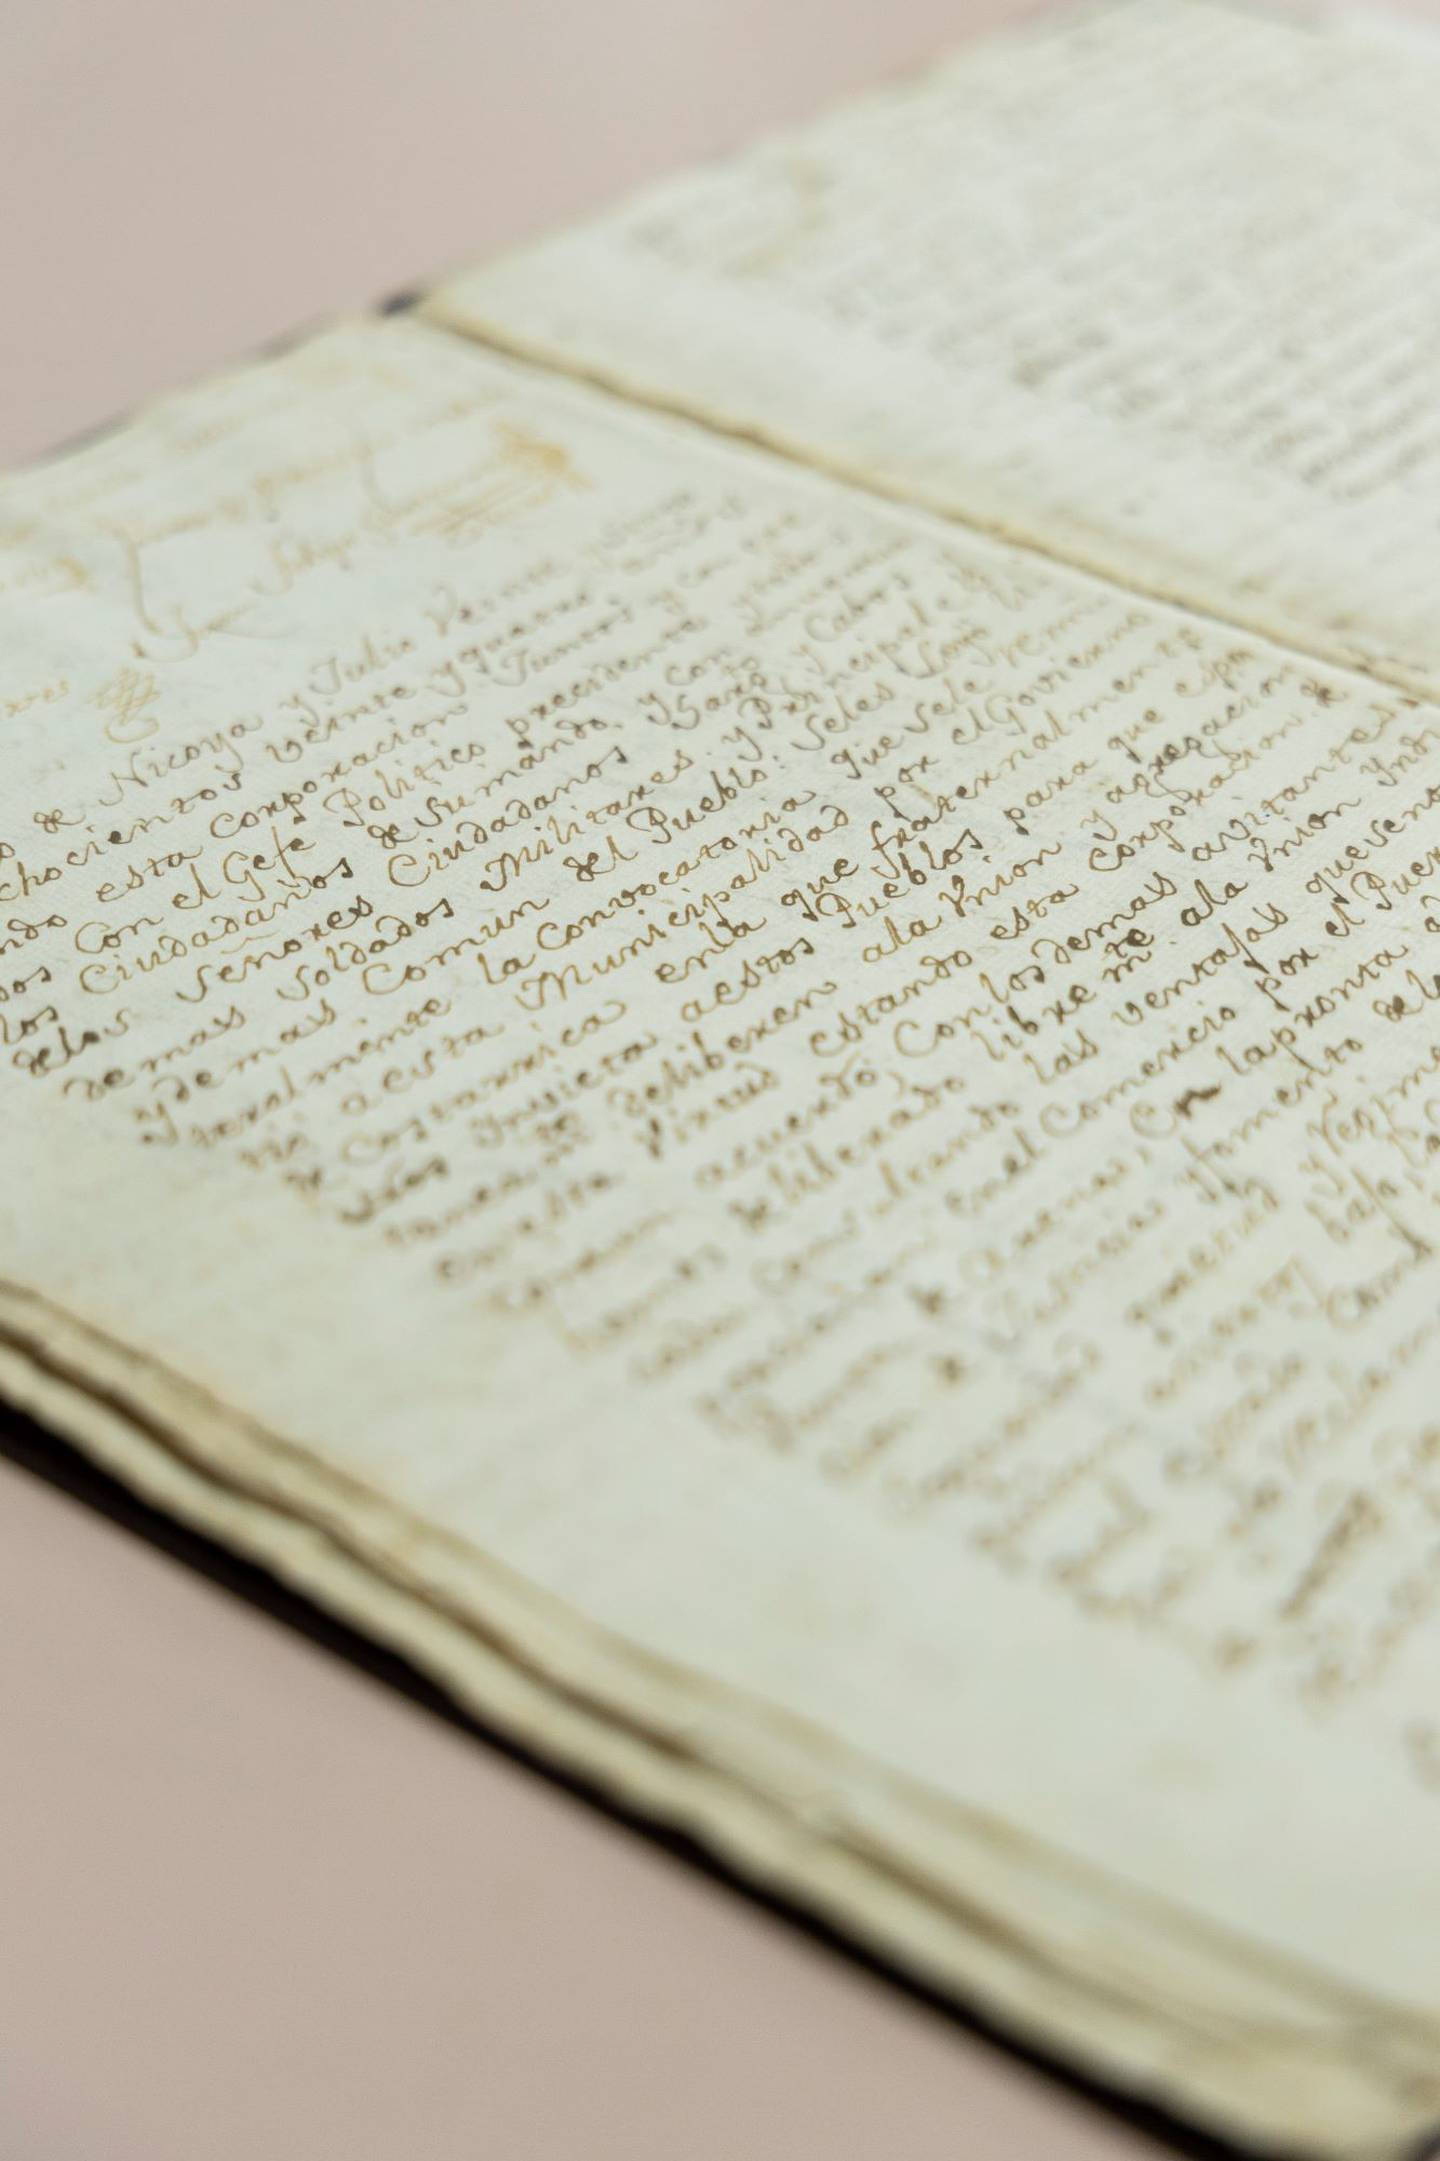 Esta acta da cuenta de la firma del tratado de la Anexión.

Fotografía: Archivo Nacional